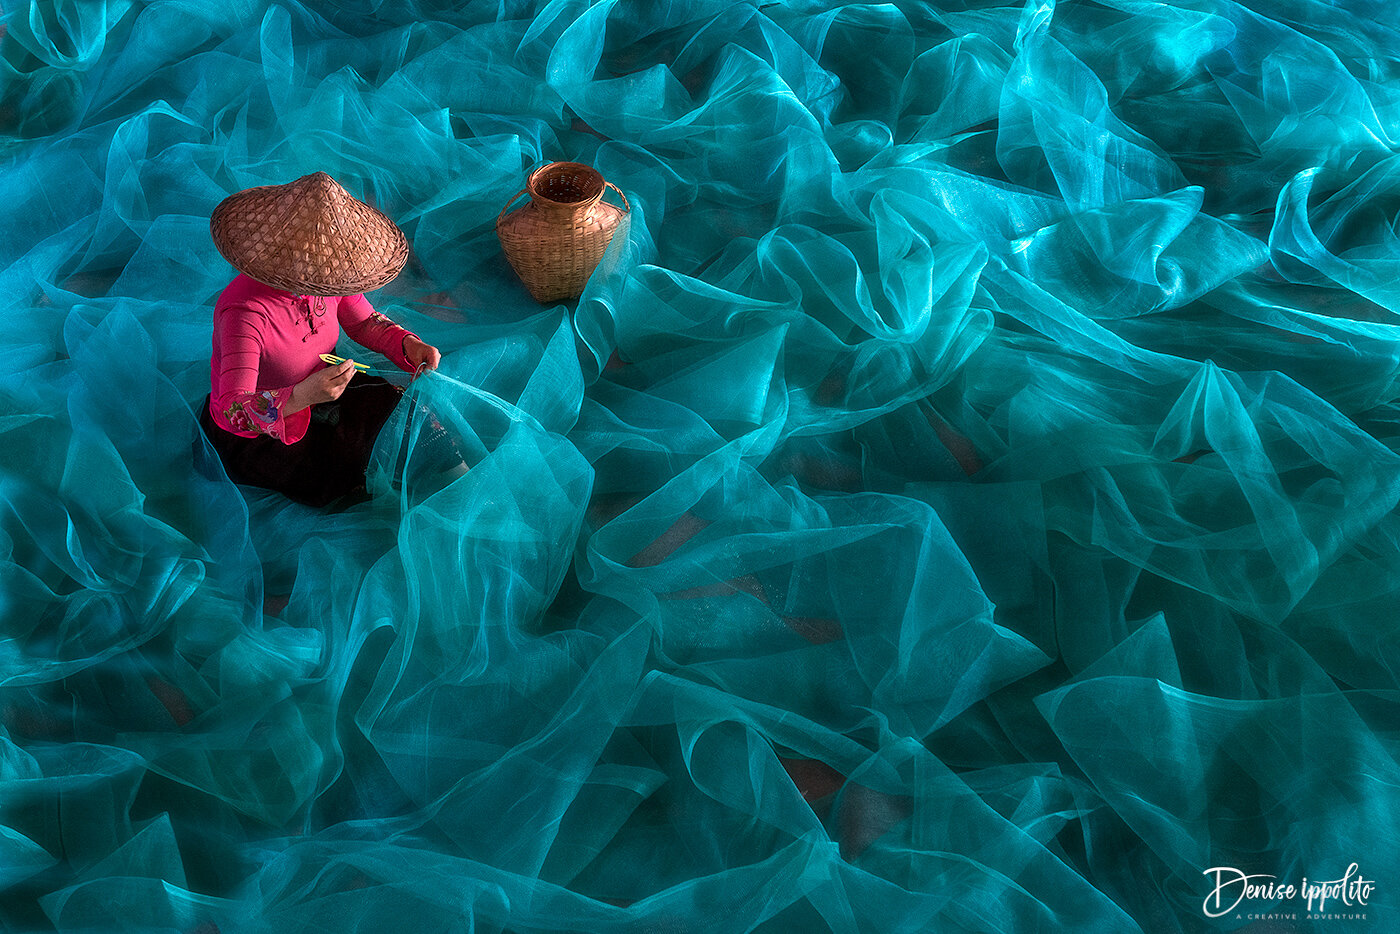 Fishing Nets, China